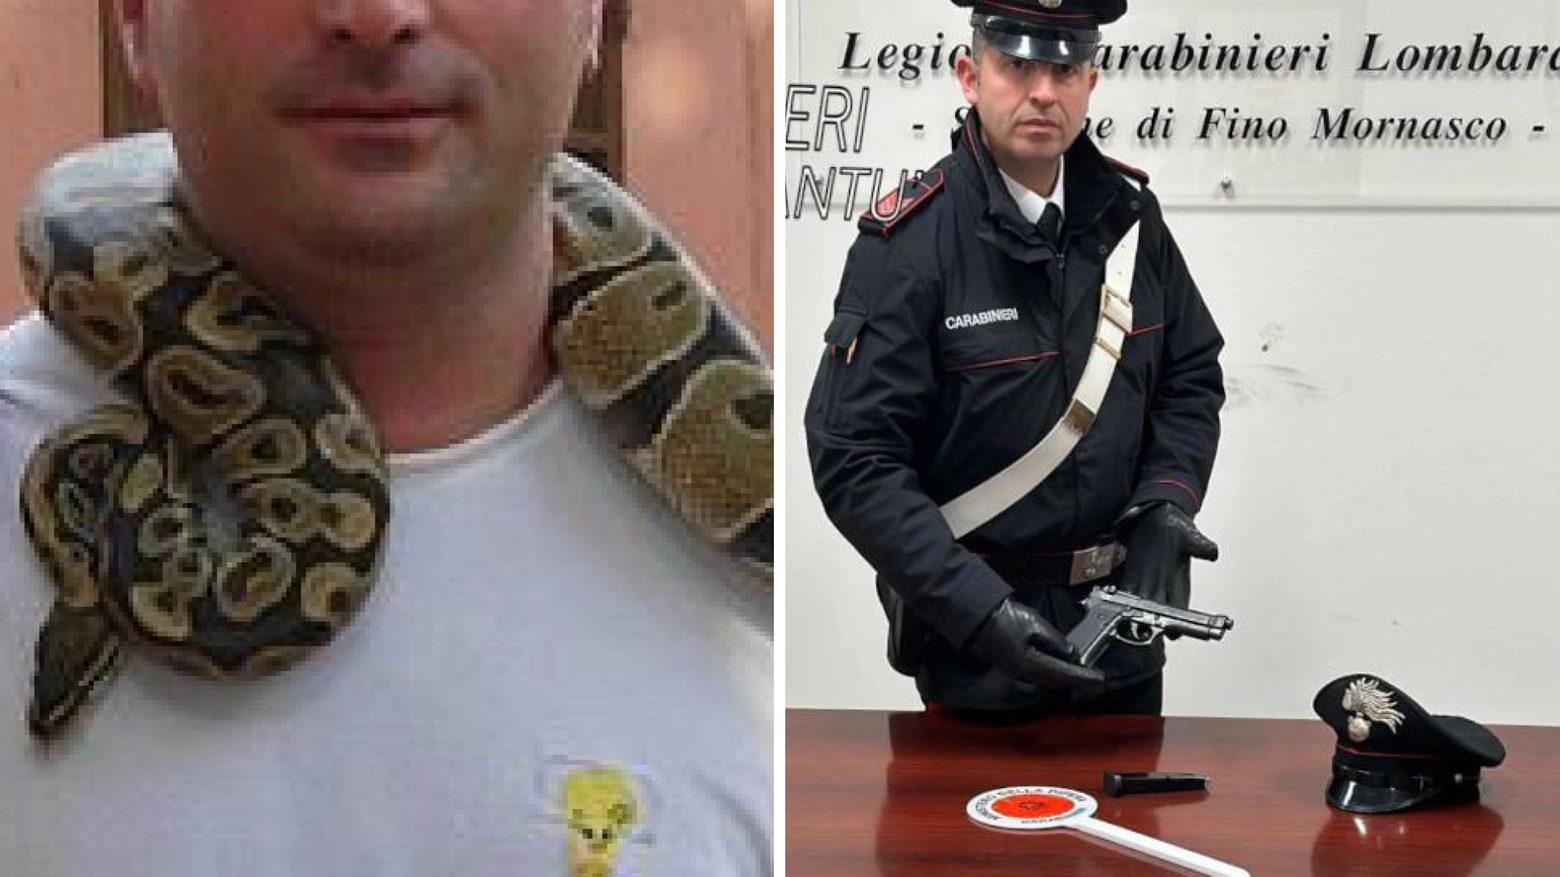 A destra, la pistola sequestrata dai carabinieri di Fino Mornasco